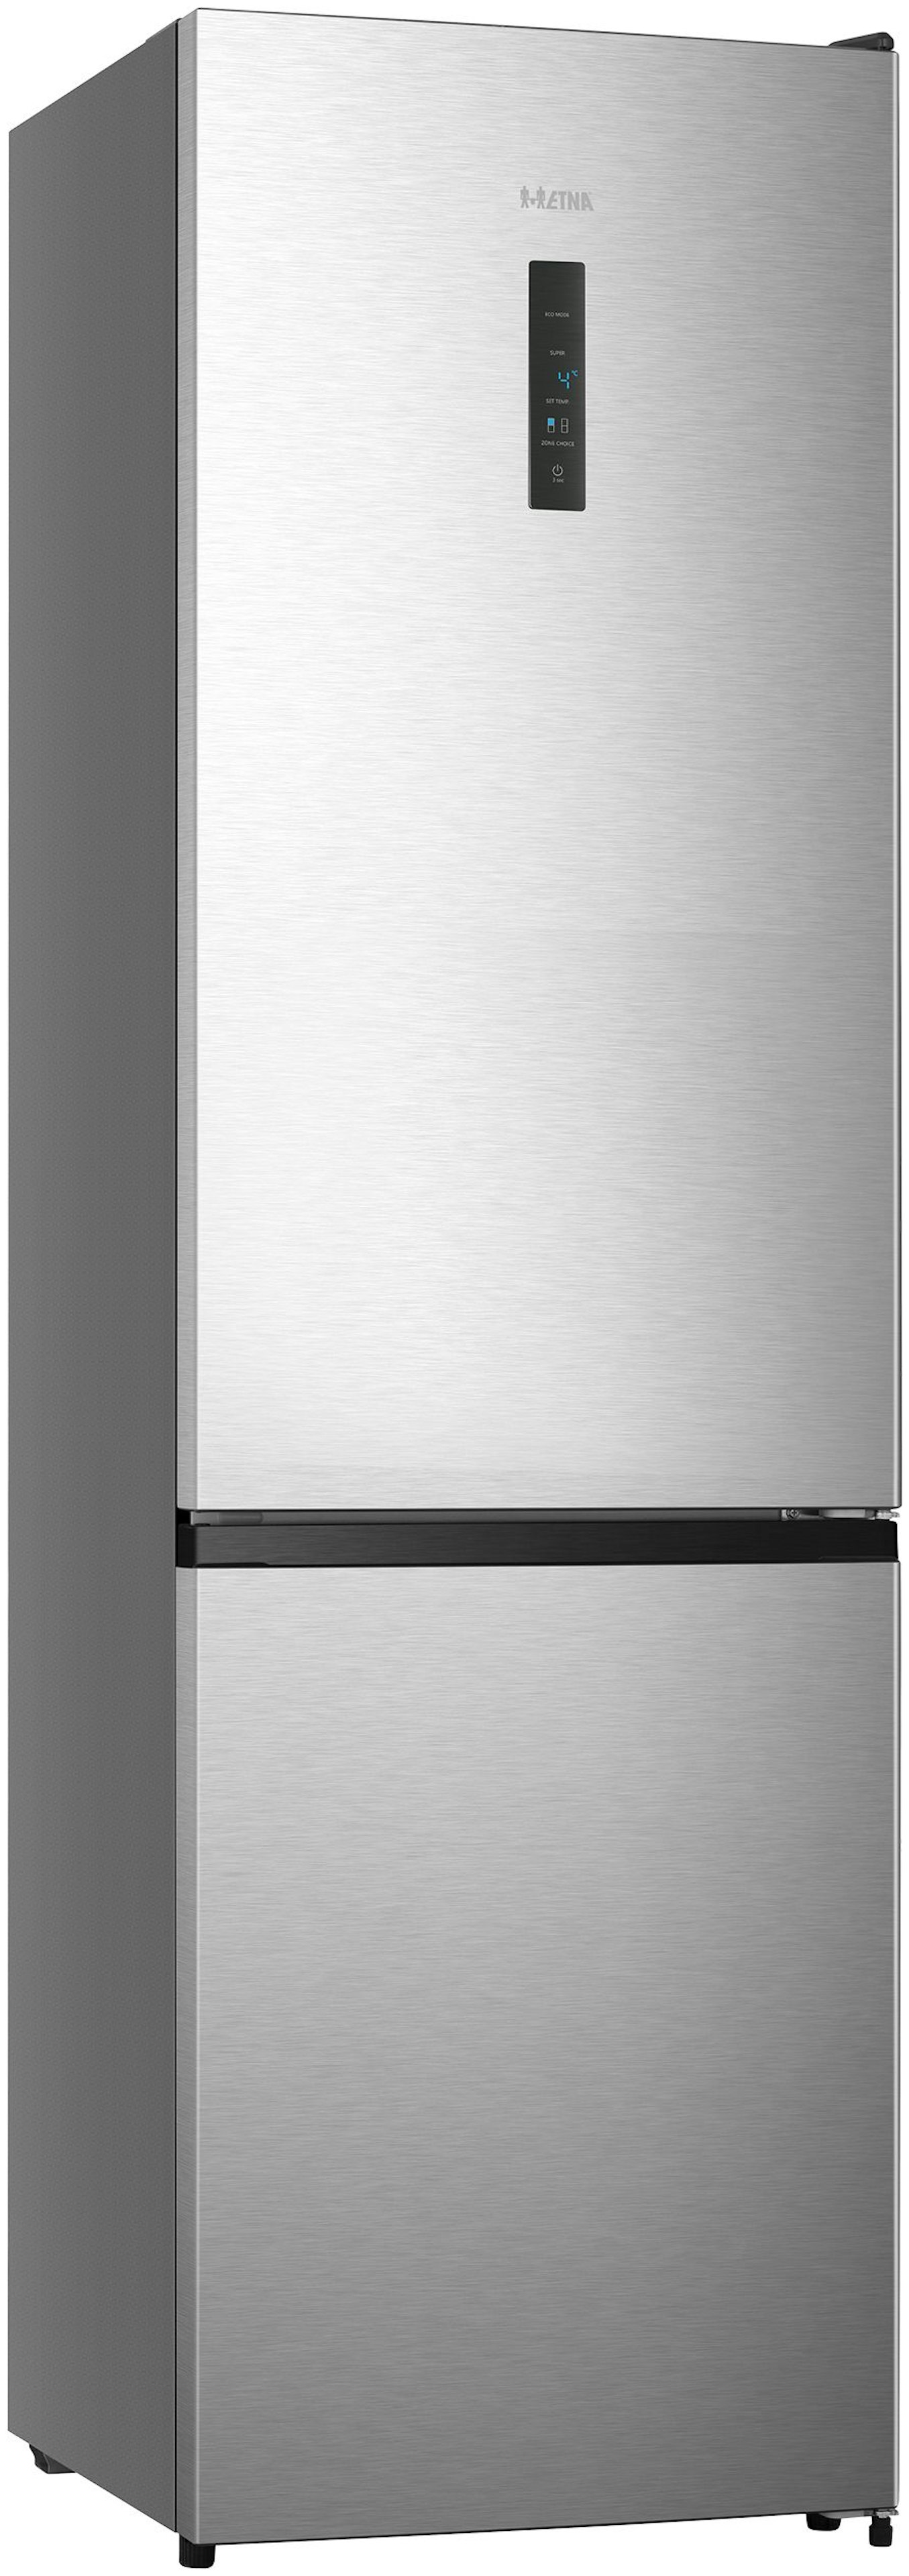 Etna koelkast vrijstaand KCV520NRVS afbeelding 4